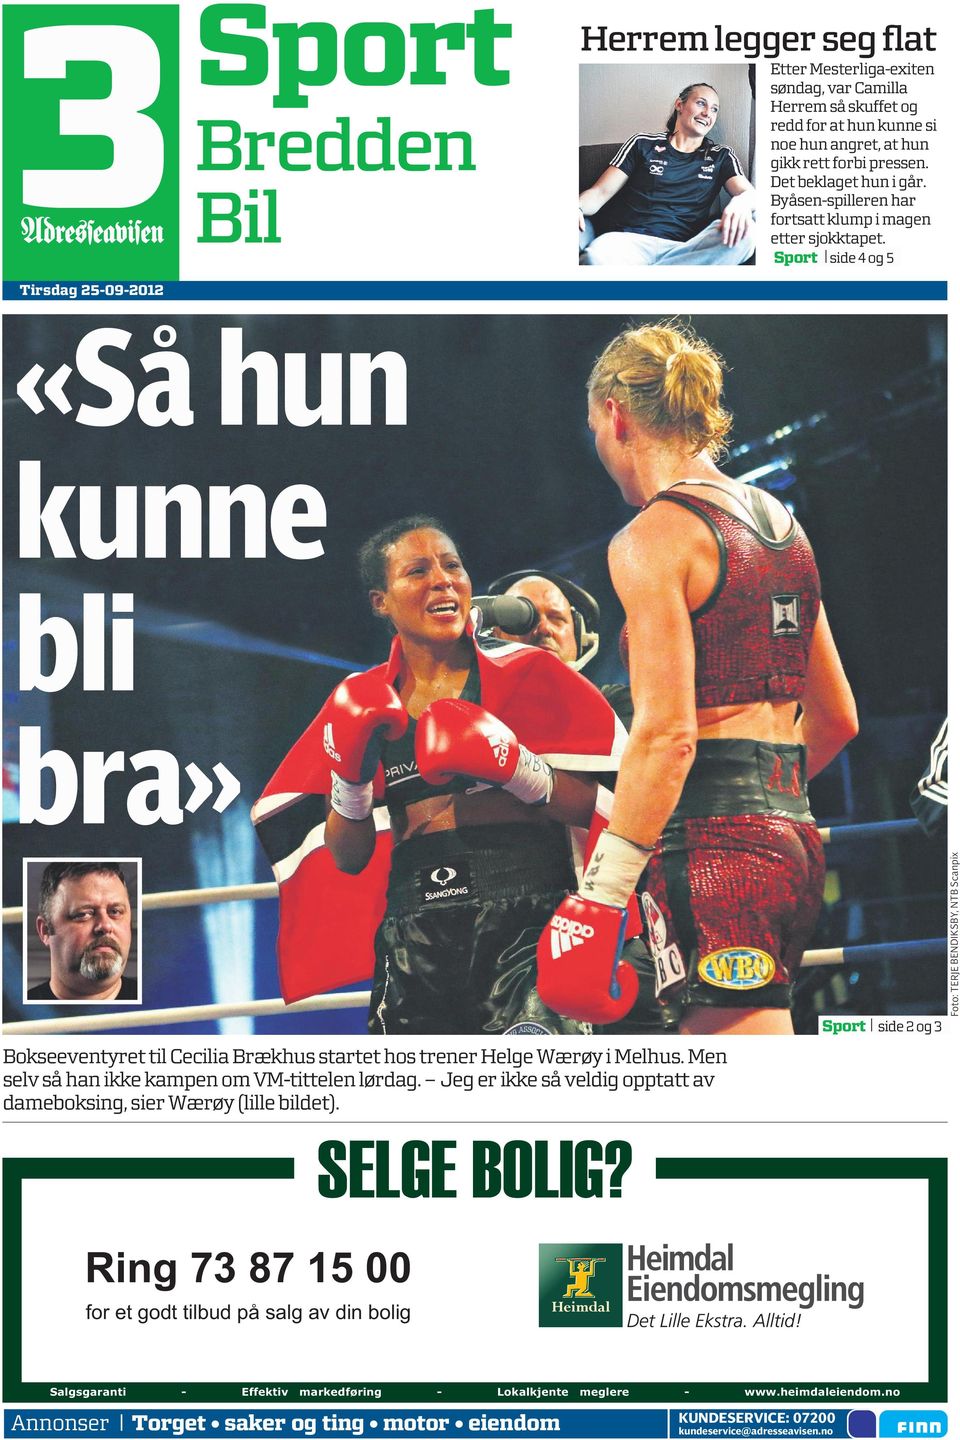 Sport side 4 og 5 «Så hun kunne bli bra» Bokseeventyret til Cecilia Brækhus startet hos trener Helge Wærøy i Melhus. Men selv så han ikke kampen om VM-tittelen lørdag.